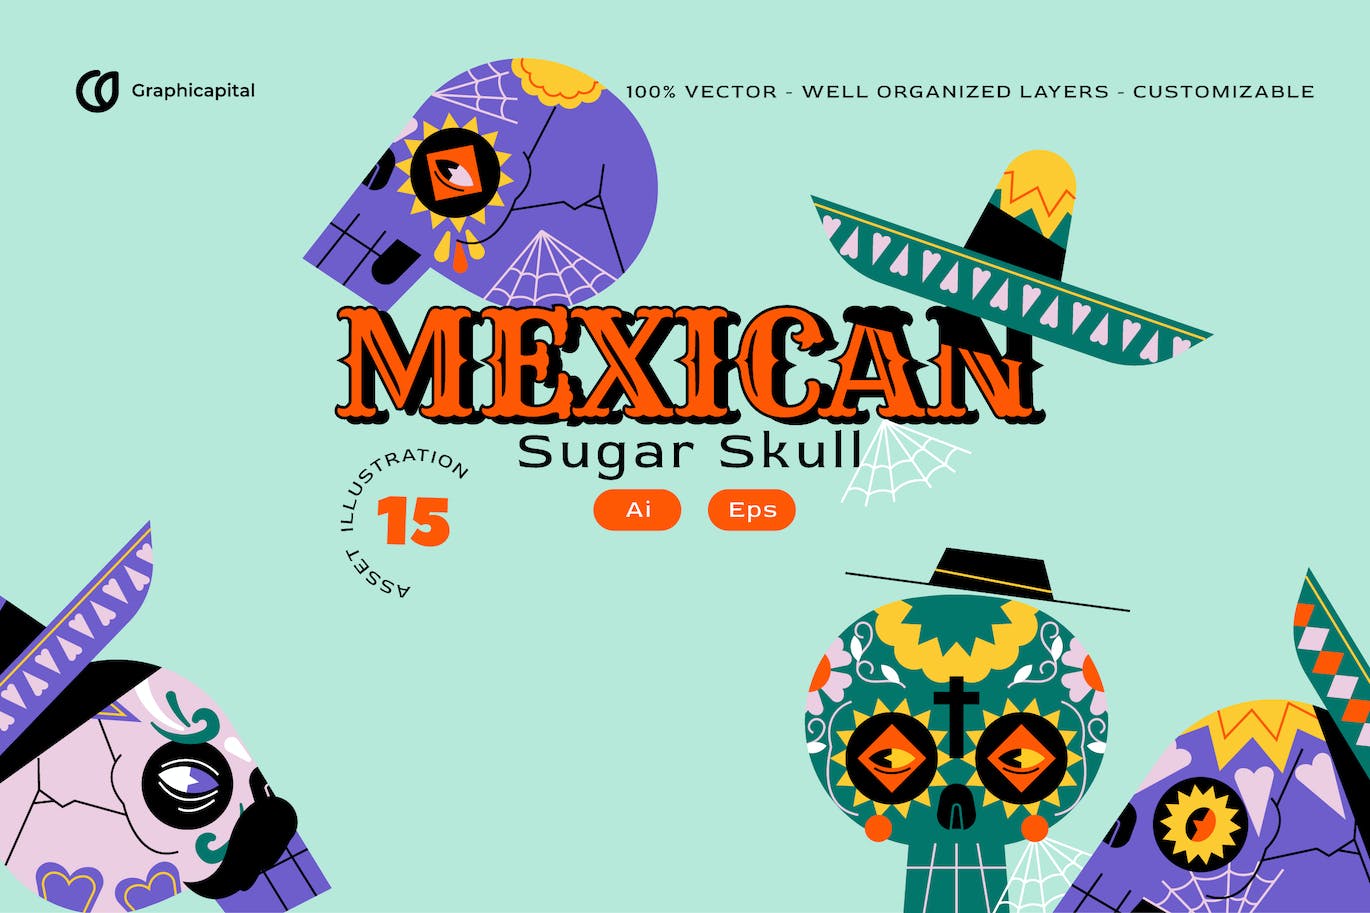 扁平设计骷髅头墨西哥矢量插画集 Pink Flat Design Skull Mexican Illustration Set 设计素材 第1张